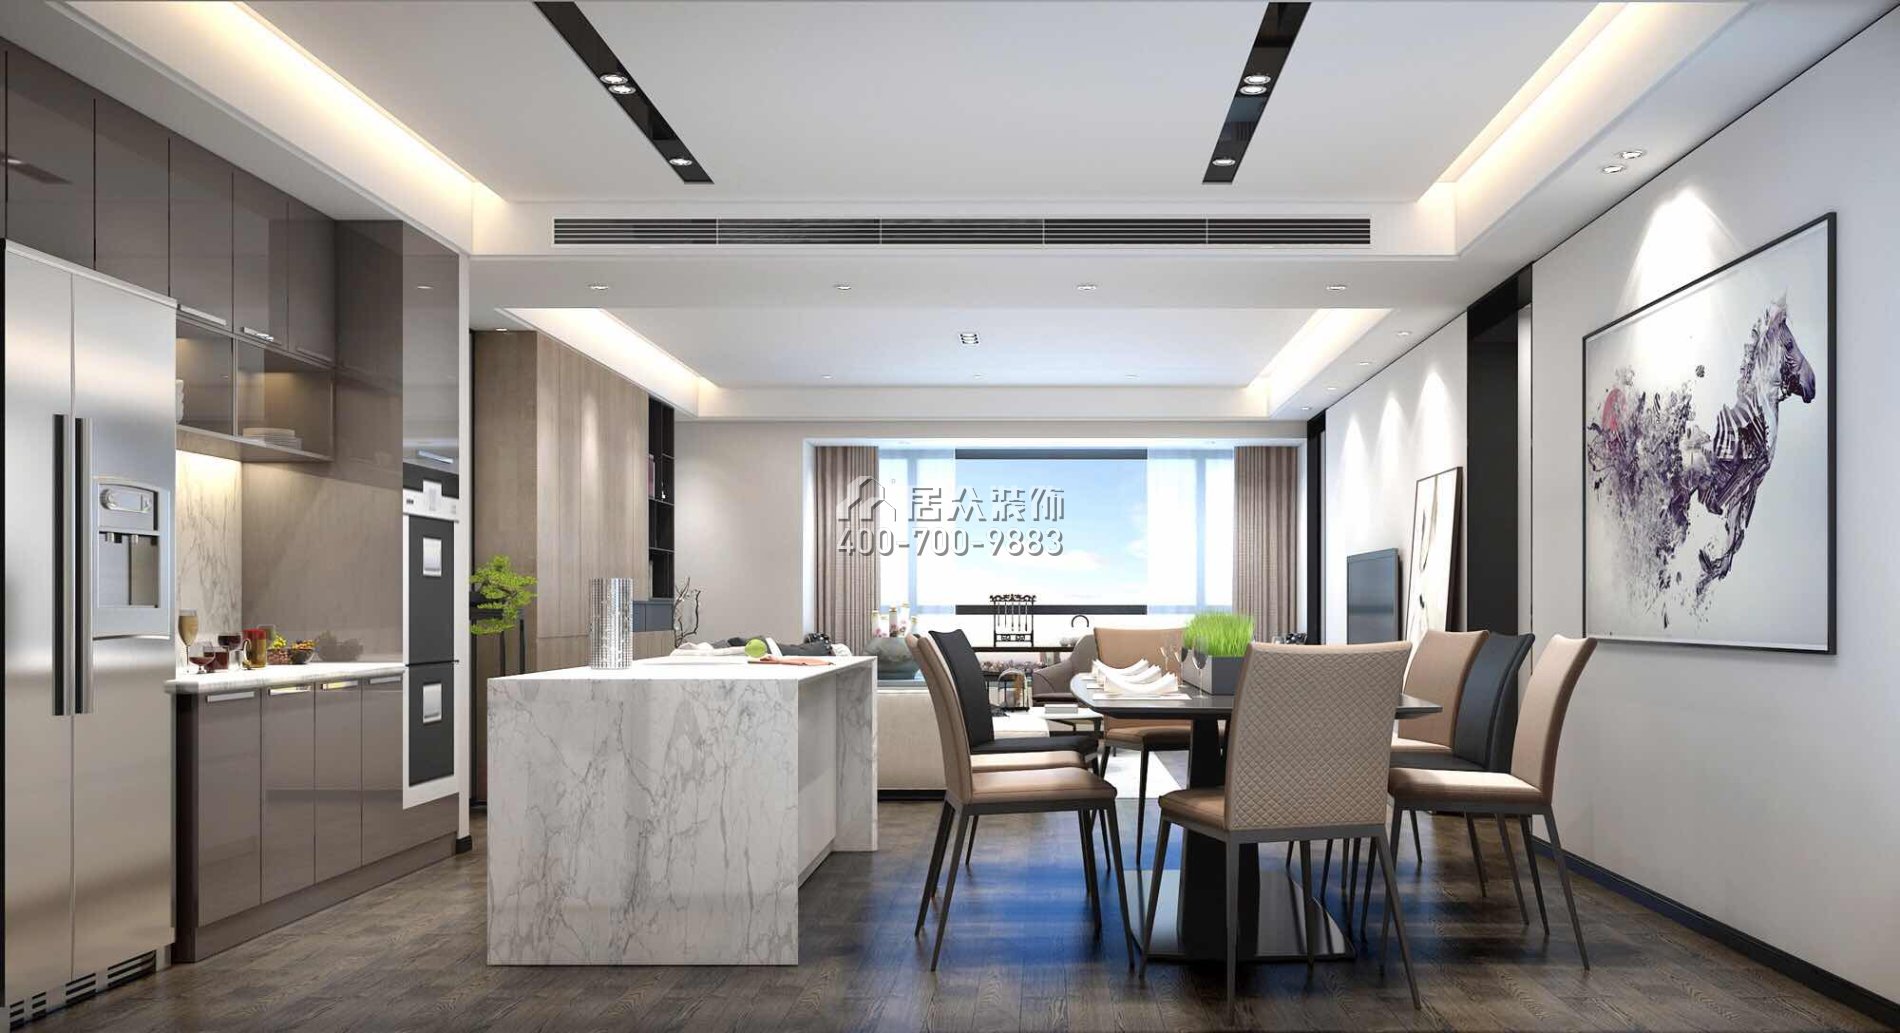 香山美墅四期203平方米现代简约风格平层户型厨房装修效果图